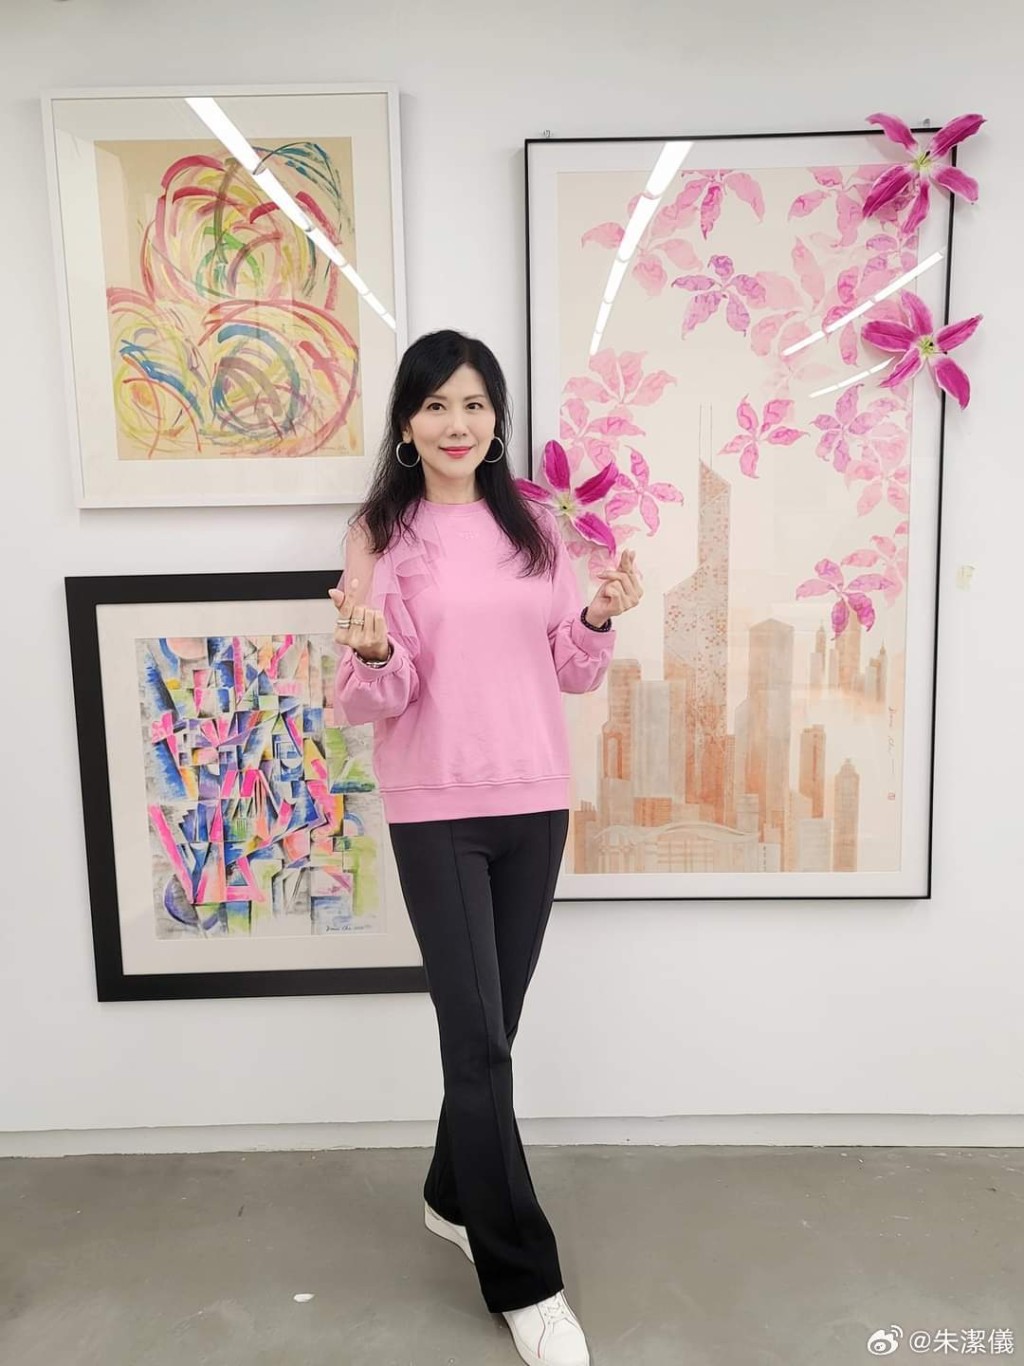 香港視覺藝術中心的展覽也有朱潔儀的作品。